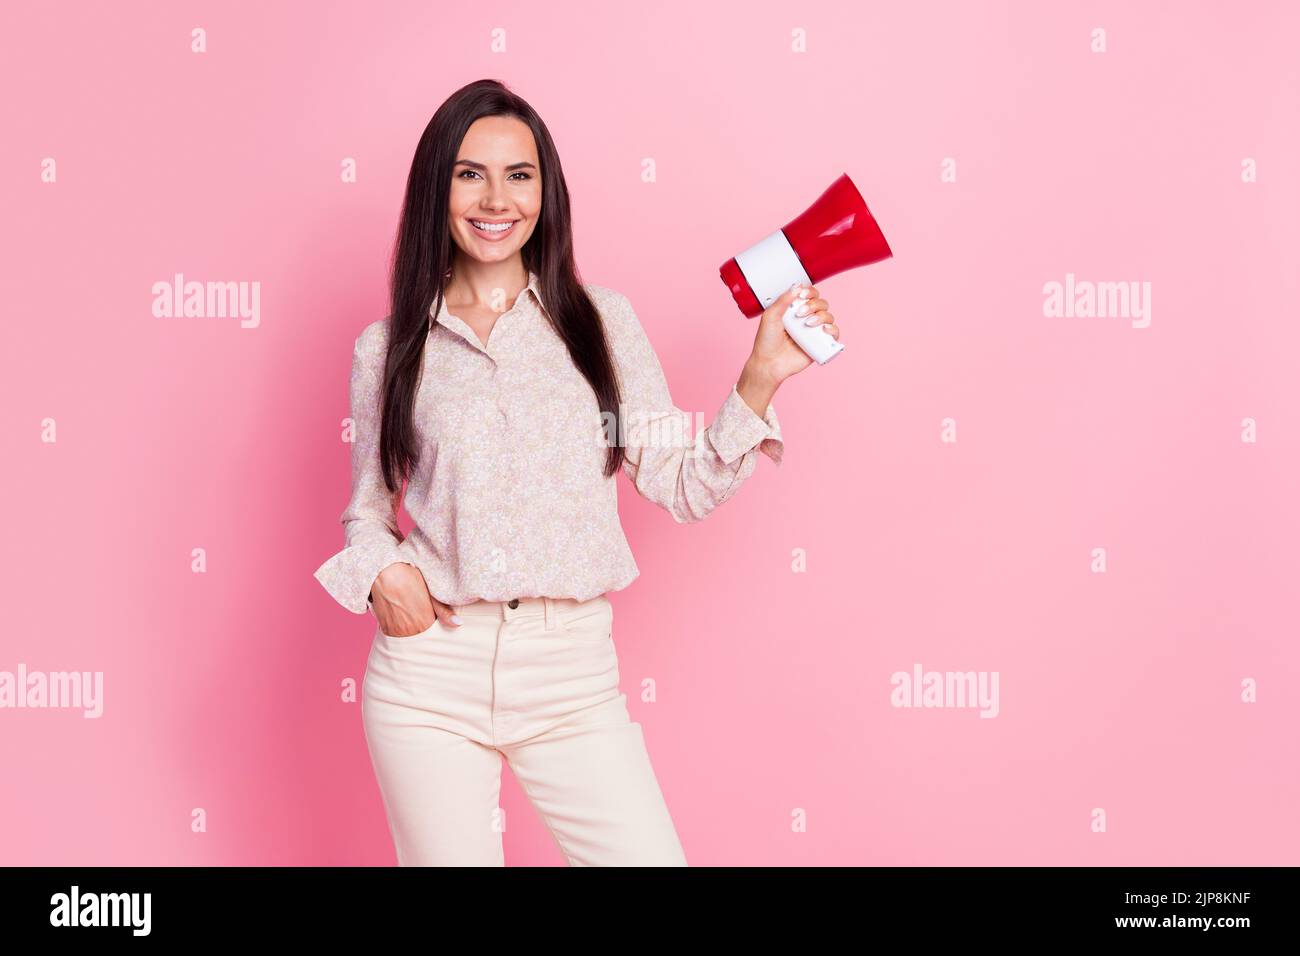 Portrait Foto von jungen attraktiven perfekte Frau halten Lautsprecher-Aktivist gegen Verschmutzung isoliert auf rosa Hintergrund Stockfoto